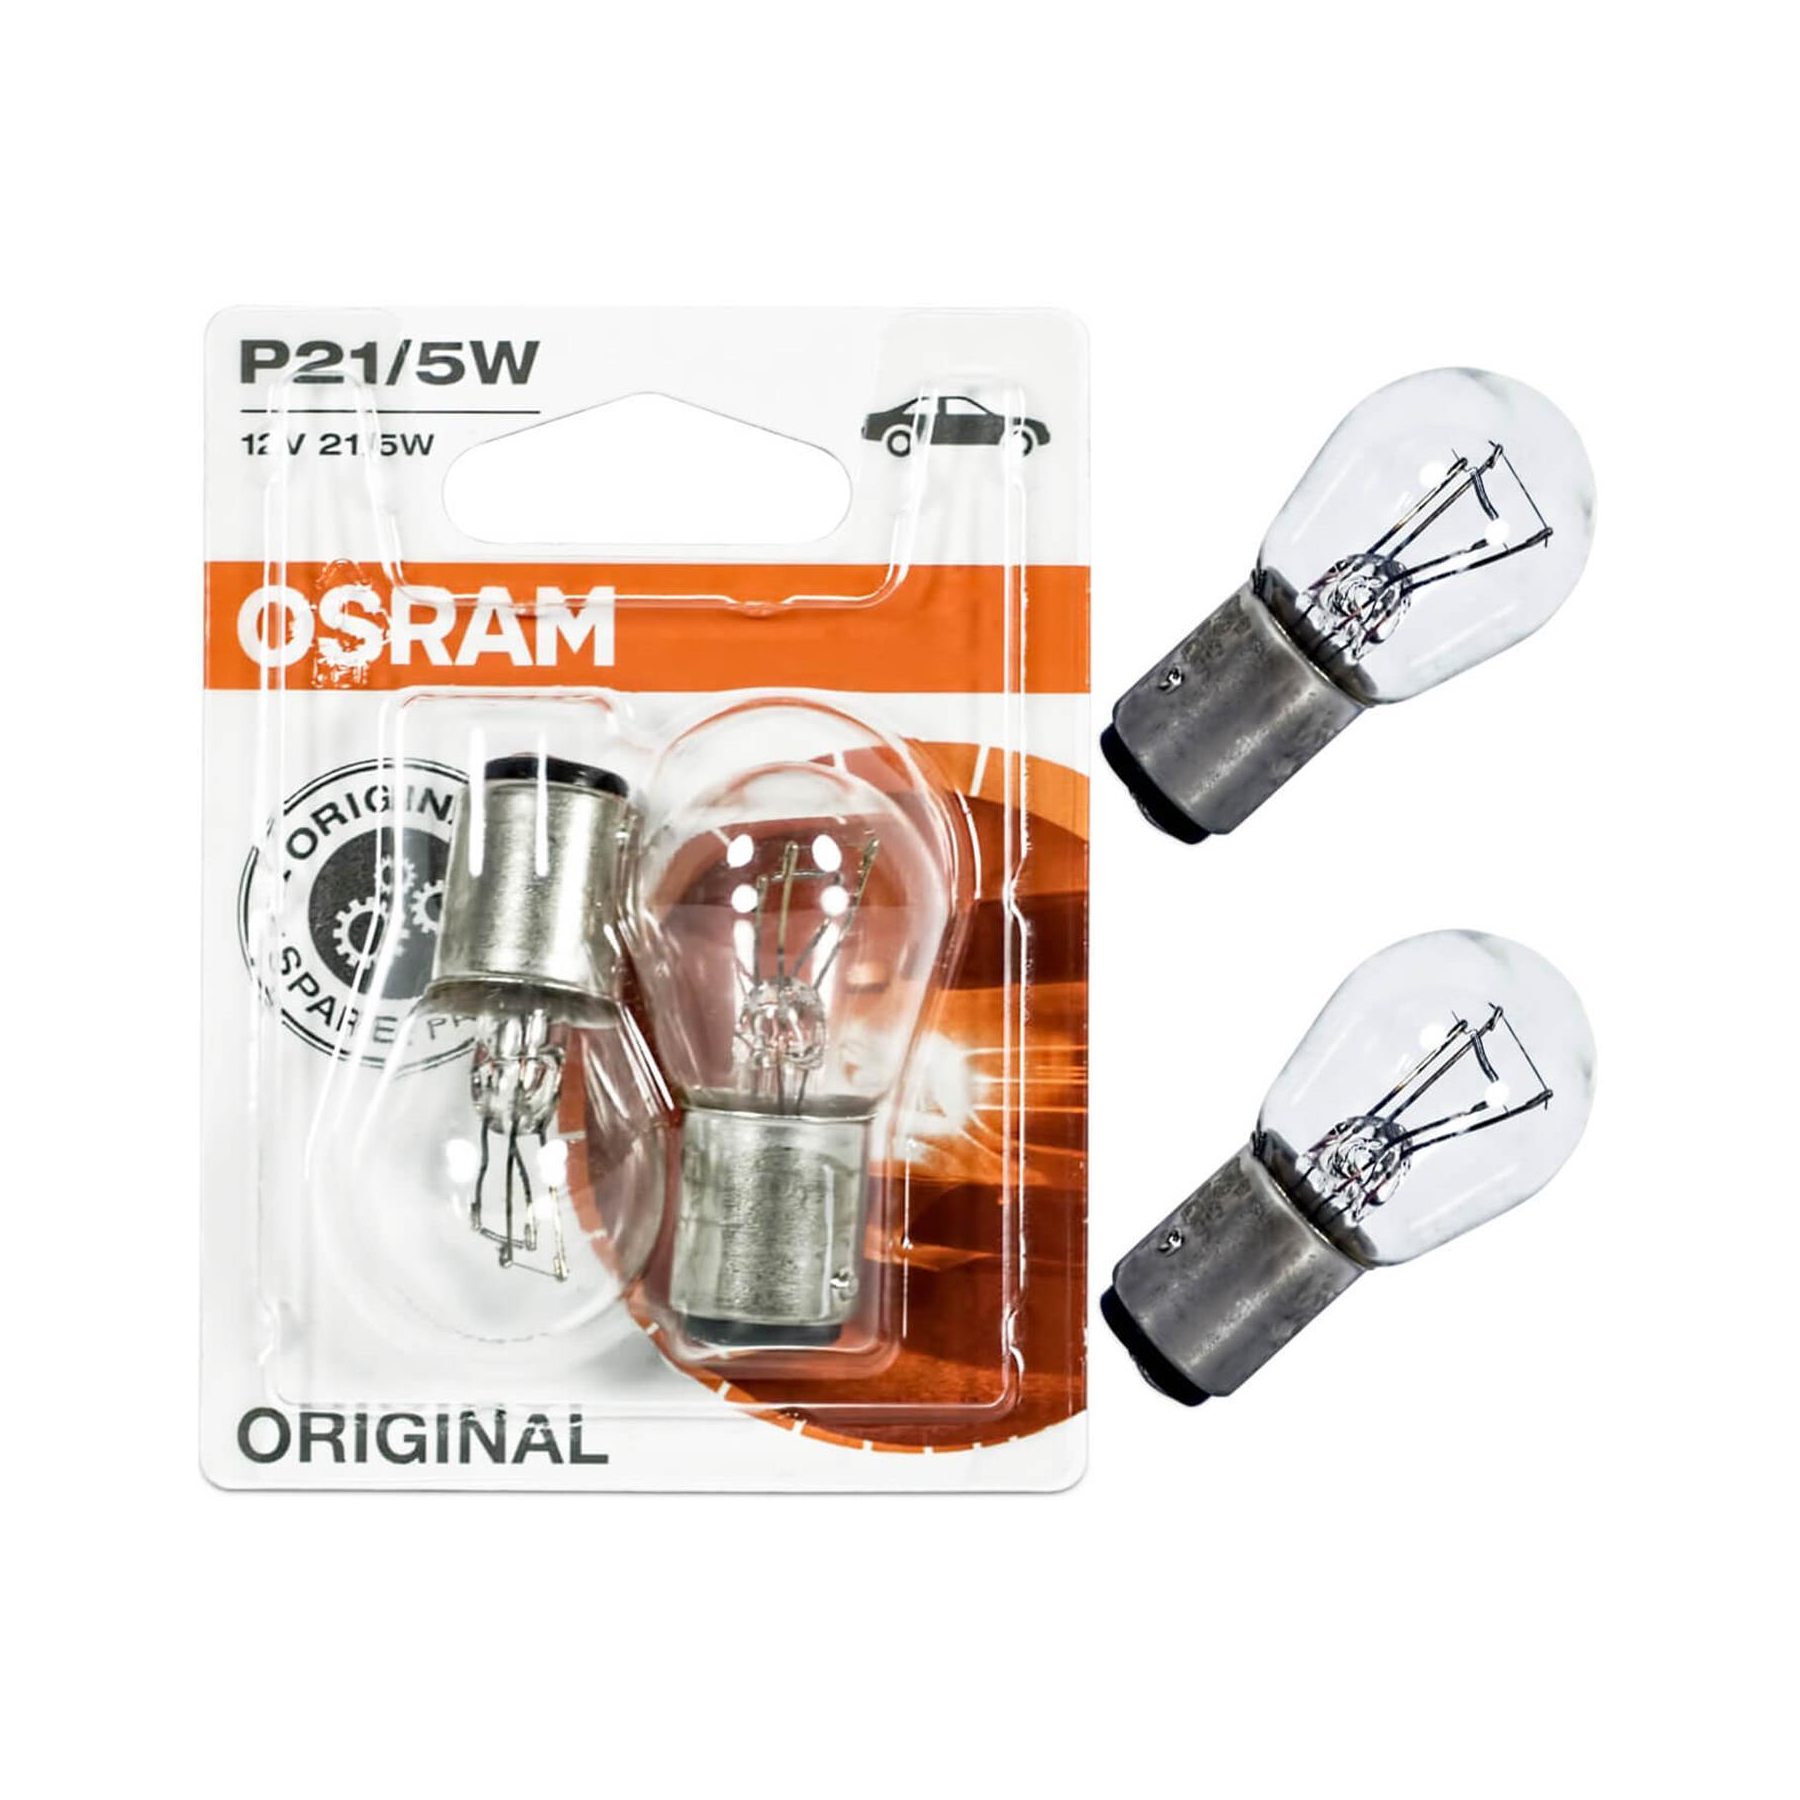 Osram Autolampe Original Line 12 V 7528-02B P21/5W 2 St., 8,43 €